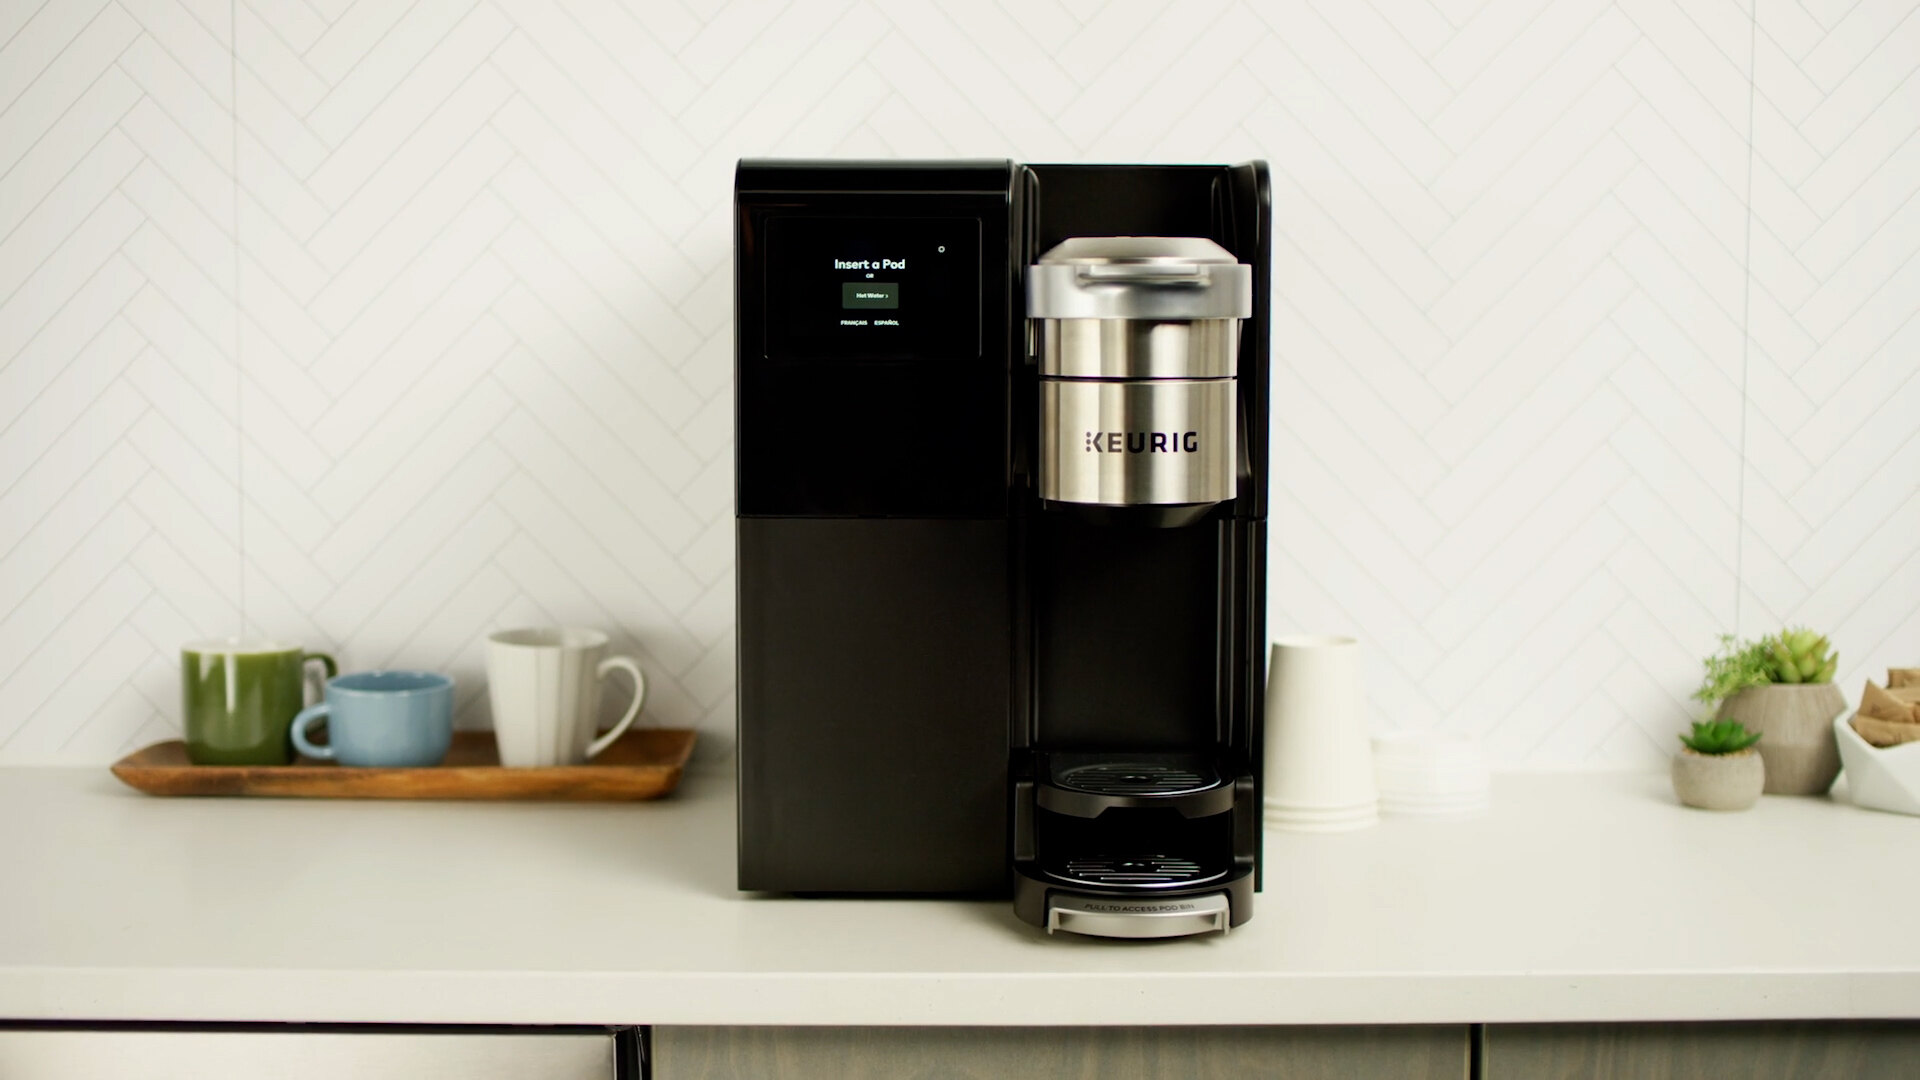 Keurig K-1500 Commercial Single Serve Pod Coffee Maker - 120V